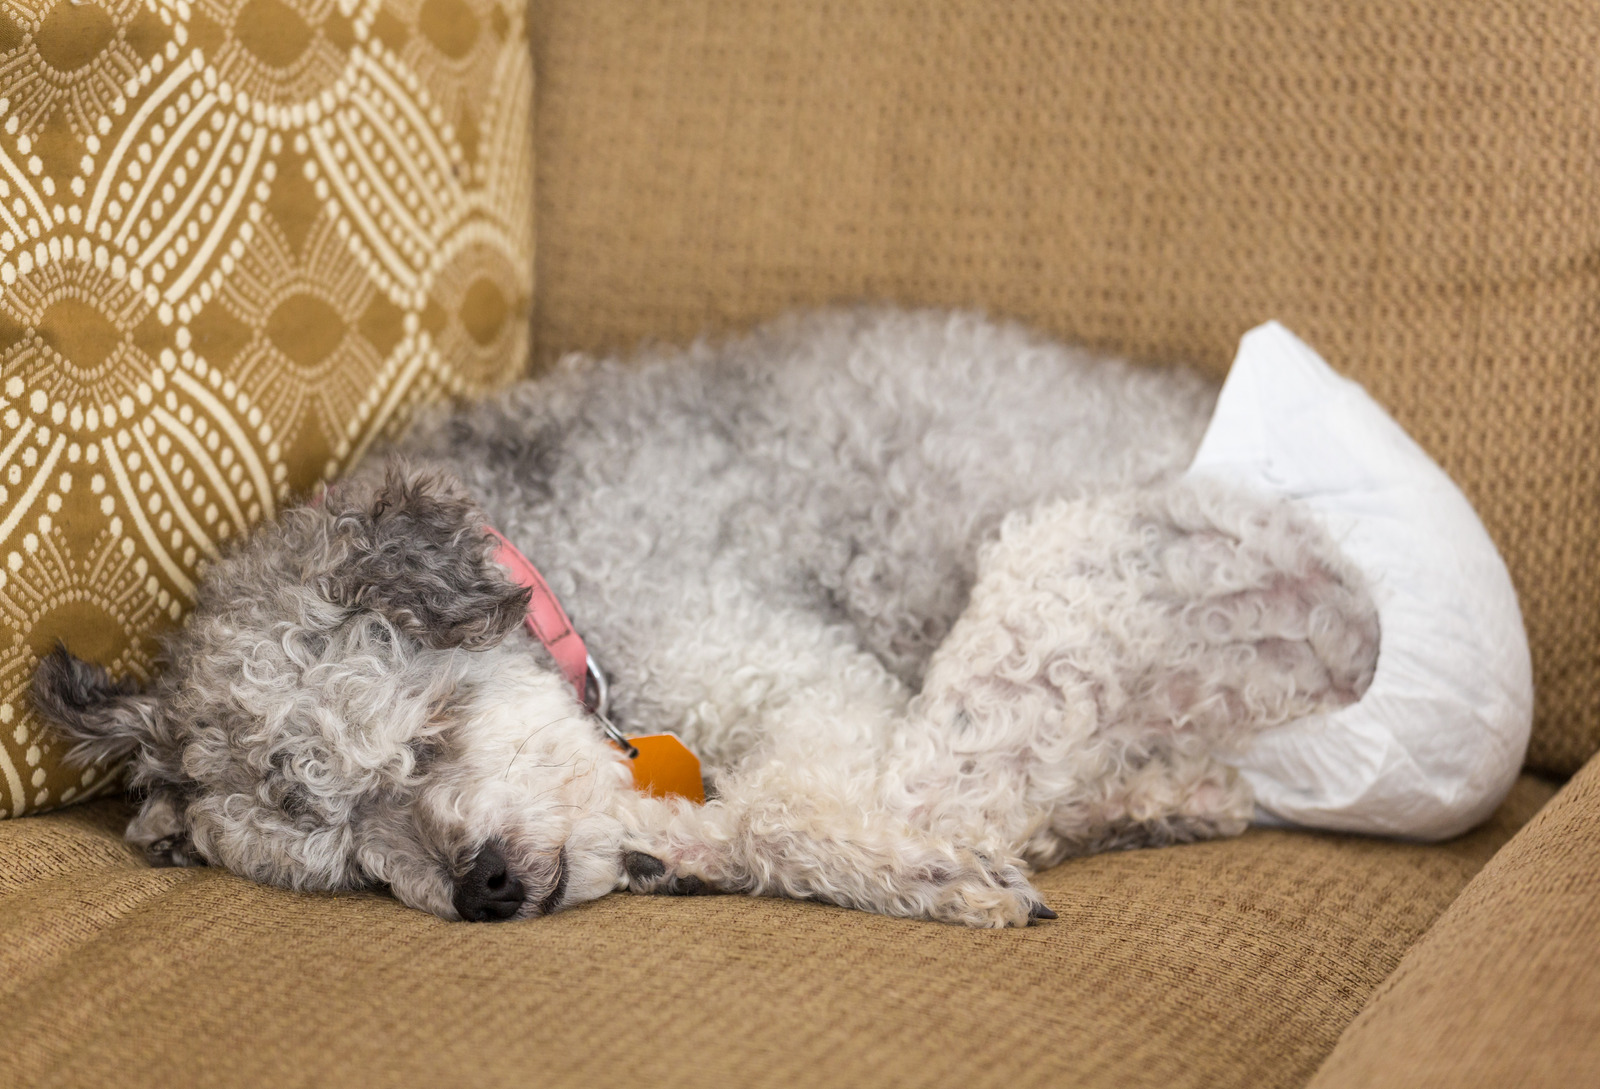 Hond met eerste loopsheid maakt zichzelf schoon en ligt op beige vloer|Grijze hond in eerste loopsheid draagt een pamper en slaapt op beige zetel